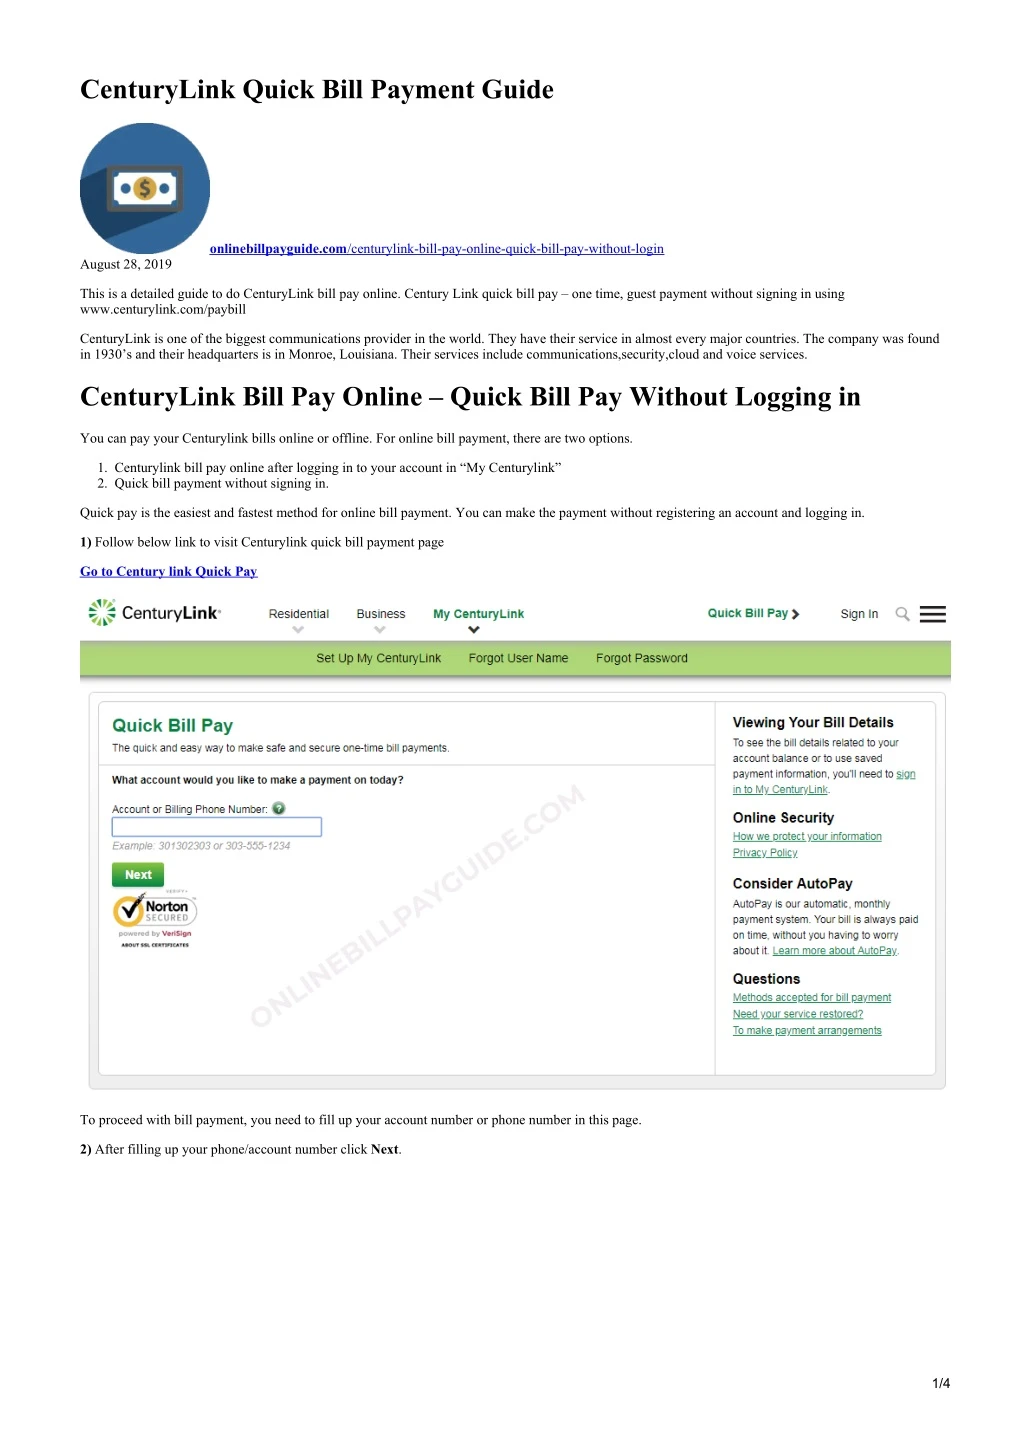 centurylink quick bill payment guide